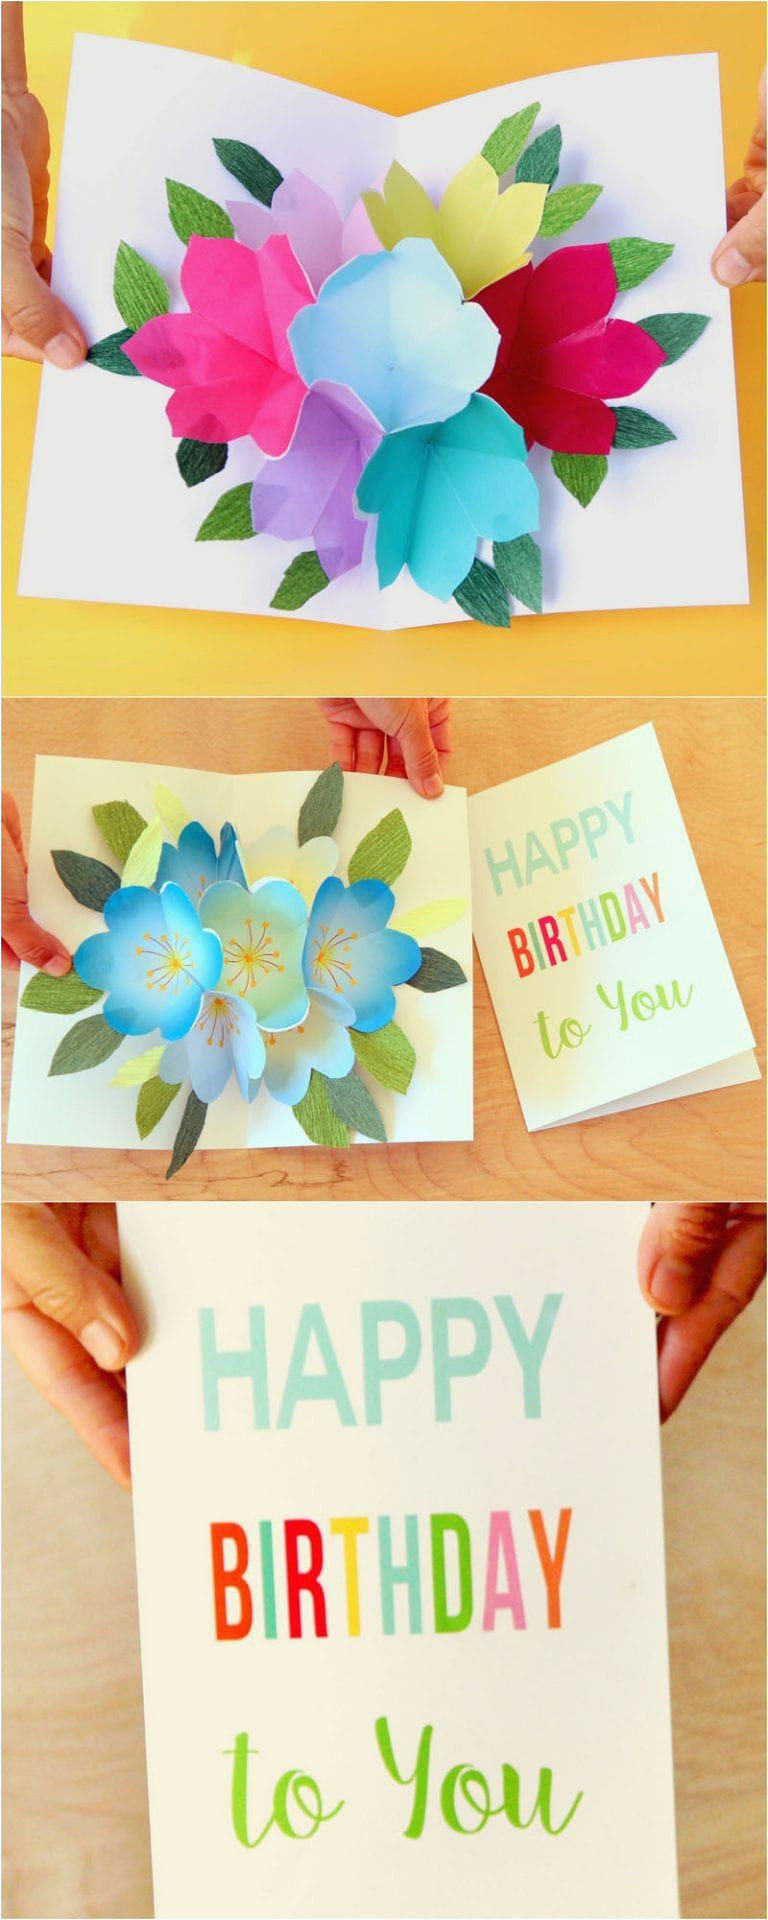 Birthday Pop Up Card Ideas Diy Birthday Card Ideas Pop Up Free Printable Happy Birthday Card